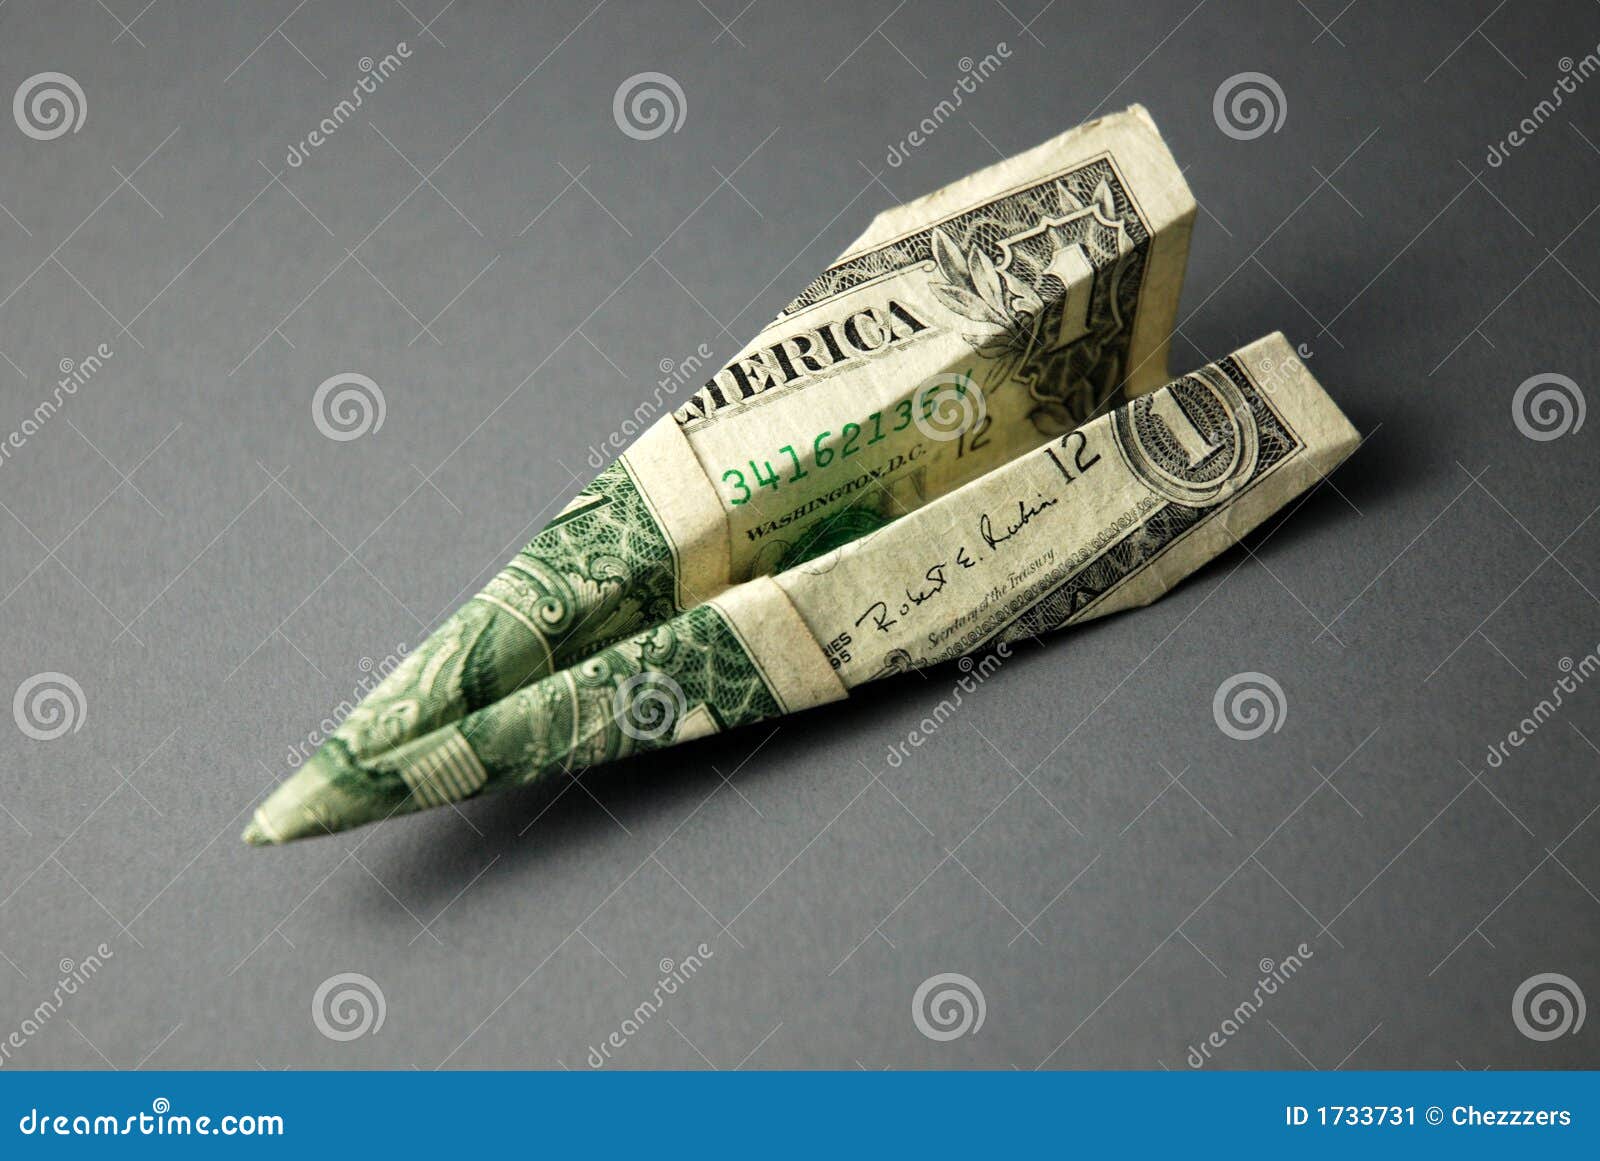 Travel Money (US Dollars) stock image. Image of finance - 1733731